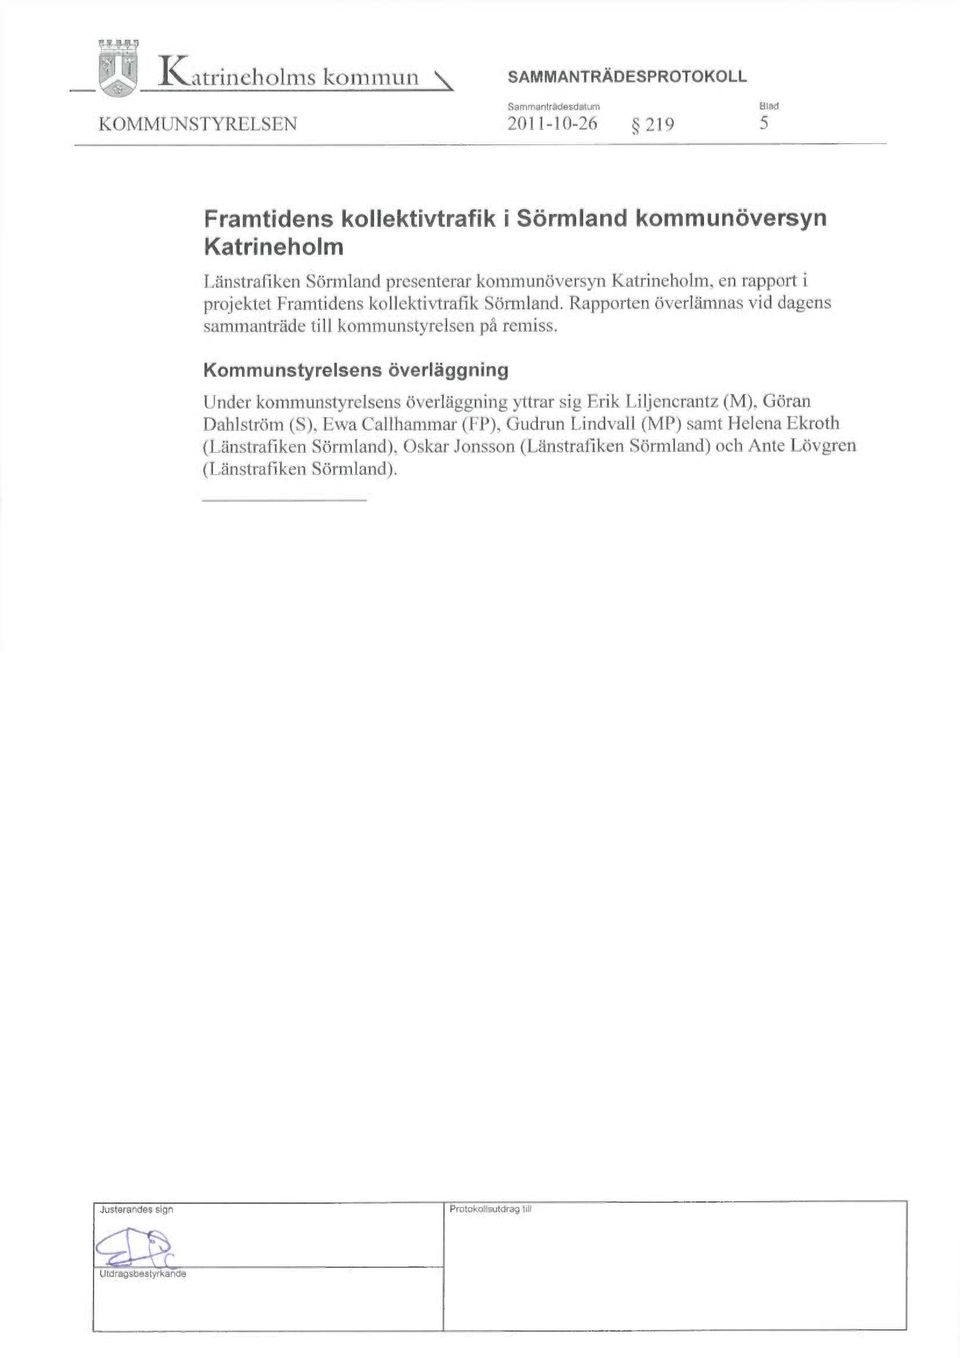 Länstrafiken Sörmland presenterat kommunöversyn Katrineholm, en rapport i projektet Framtidens kollektivtrafik Sörmland.